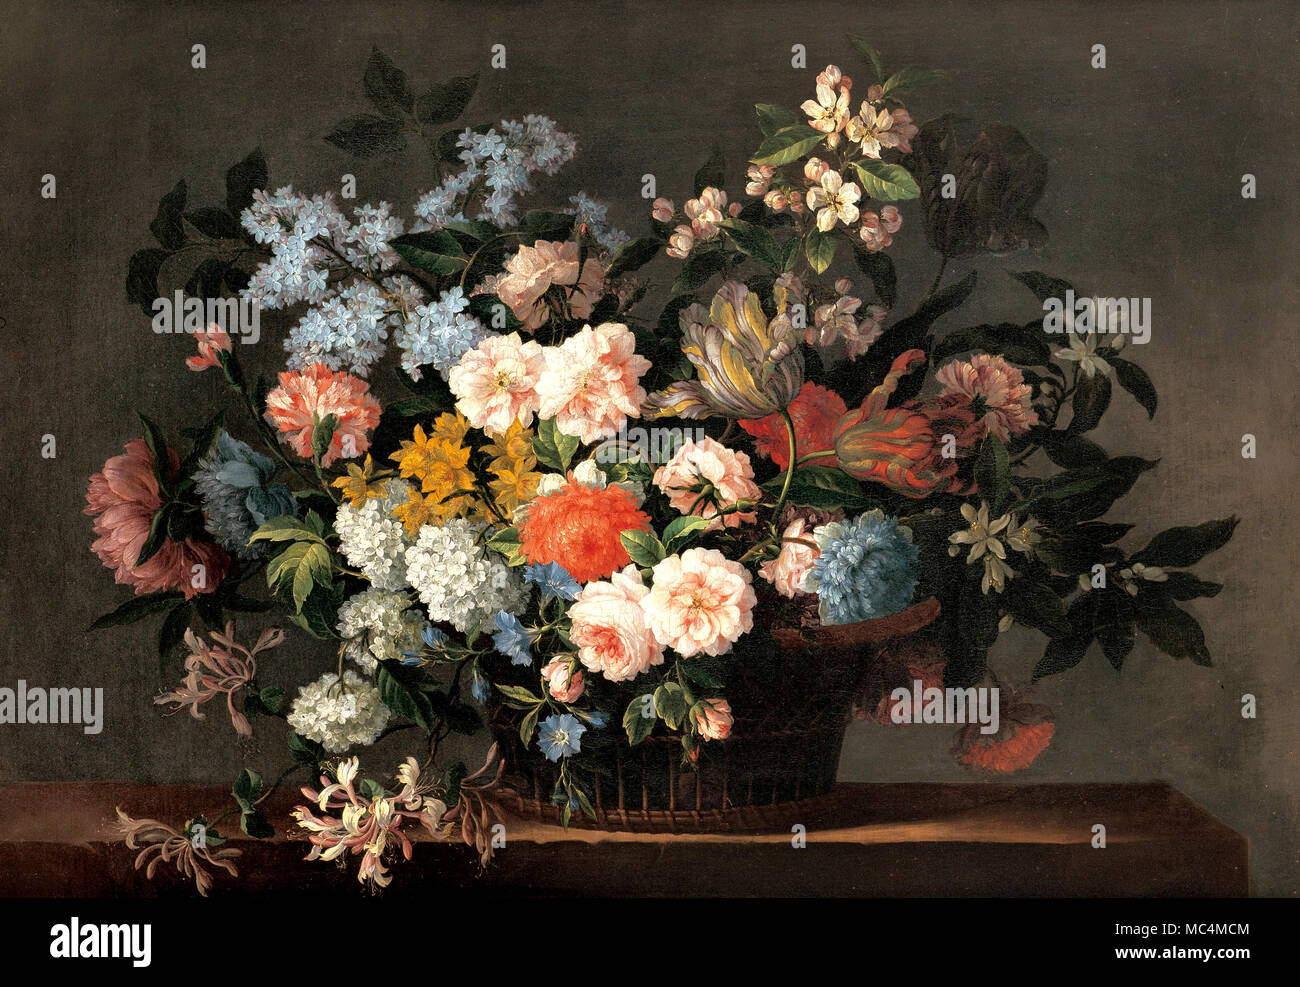 Jean-Baptiste Monnoyer, Nature morte avec panier de fleurs. Vers 1690. Huile sur toile. Art Gallery of South Australia, North Terrace, l'Australie. Banque D'Images